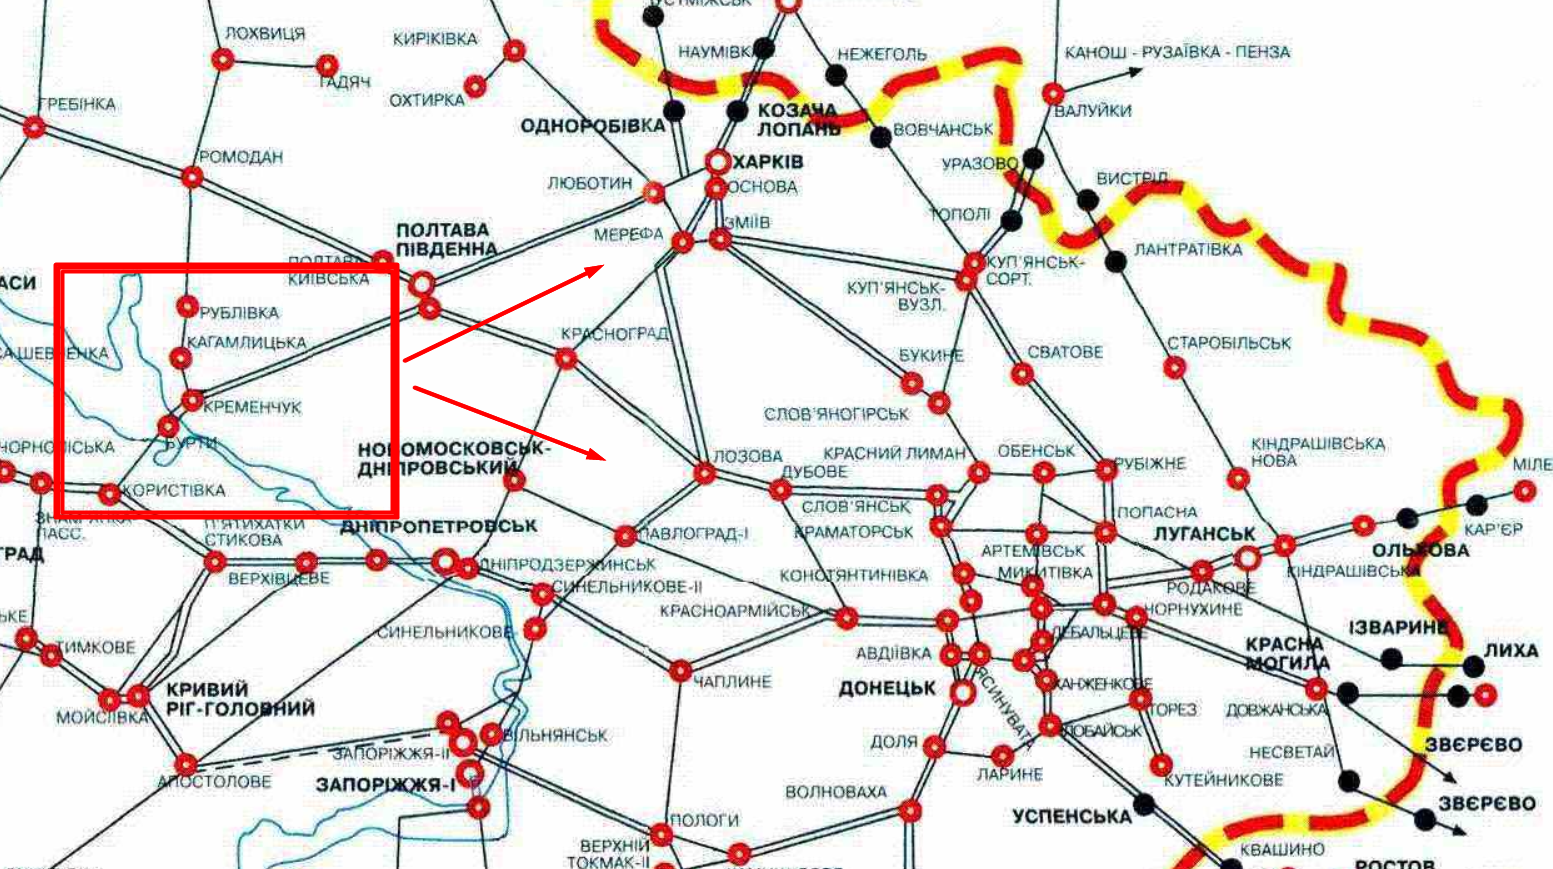 Карта железных дорог Украины в районе Полтава – Харьков – Донецк. Иллюстрация © toplivo.app